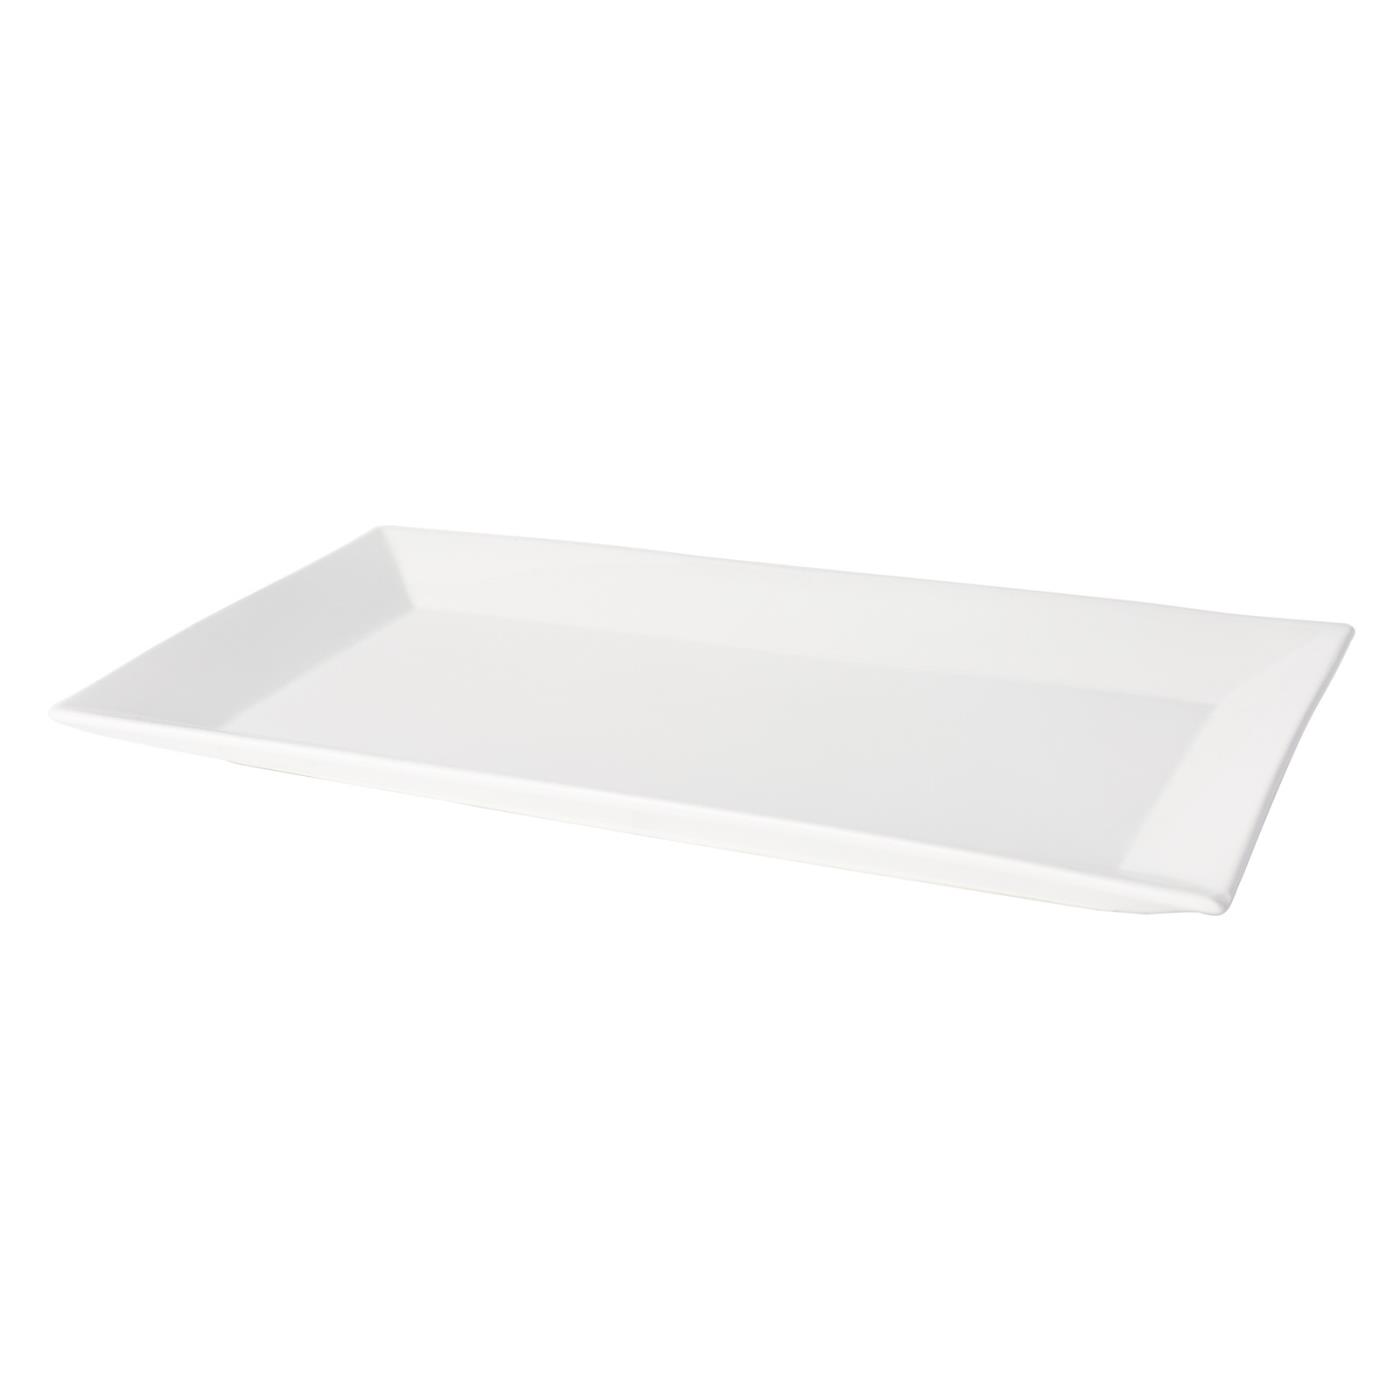 White Ceramic Rectangular Platter - 10" x 18"